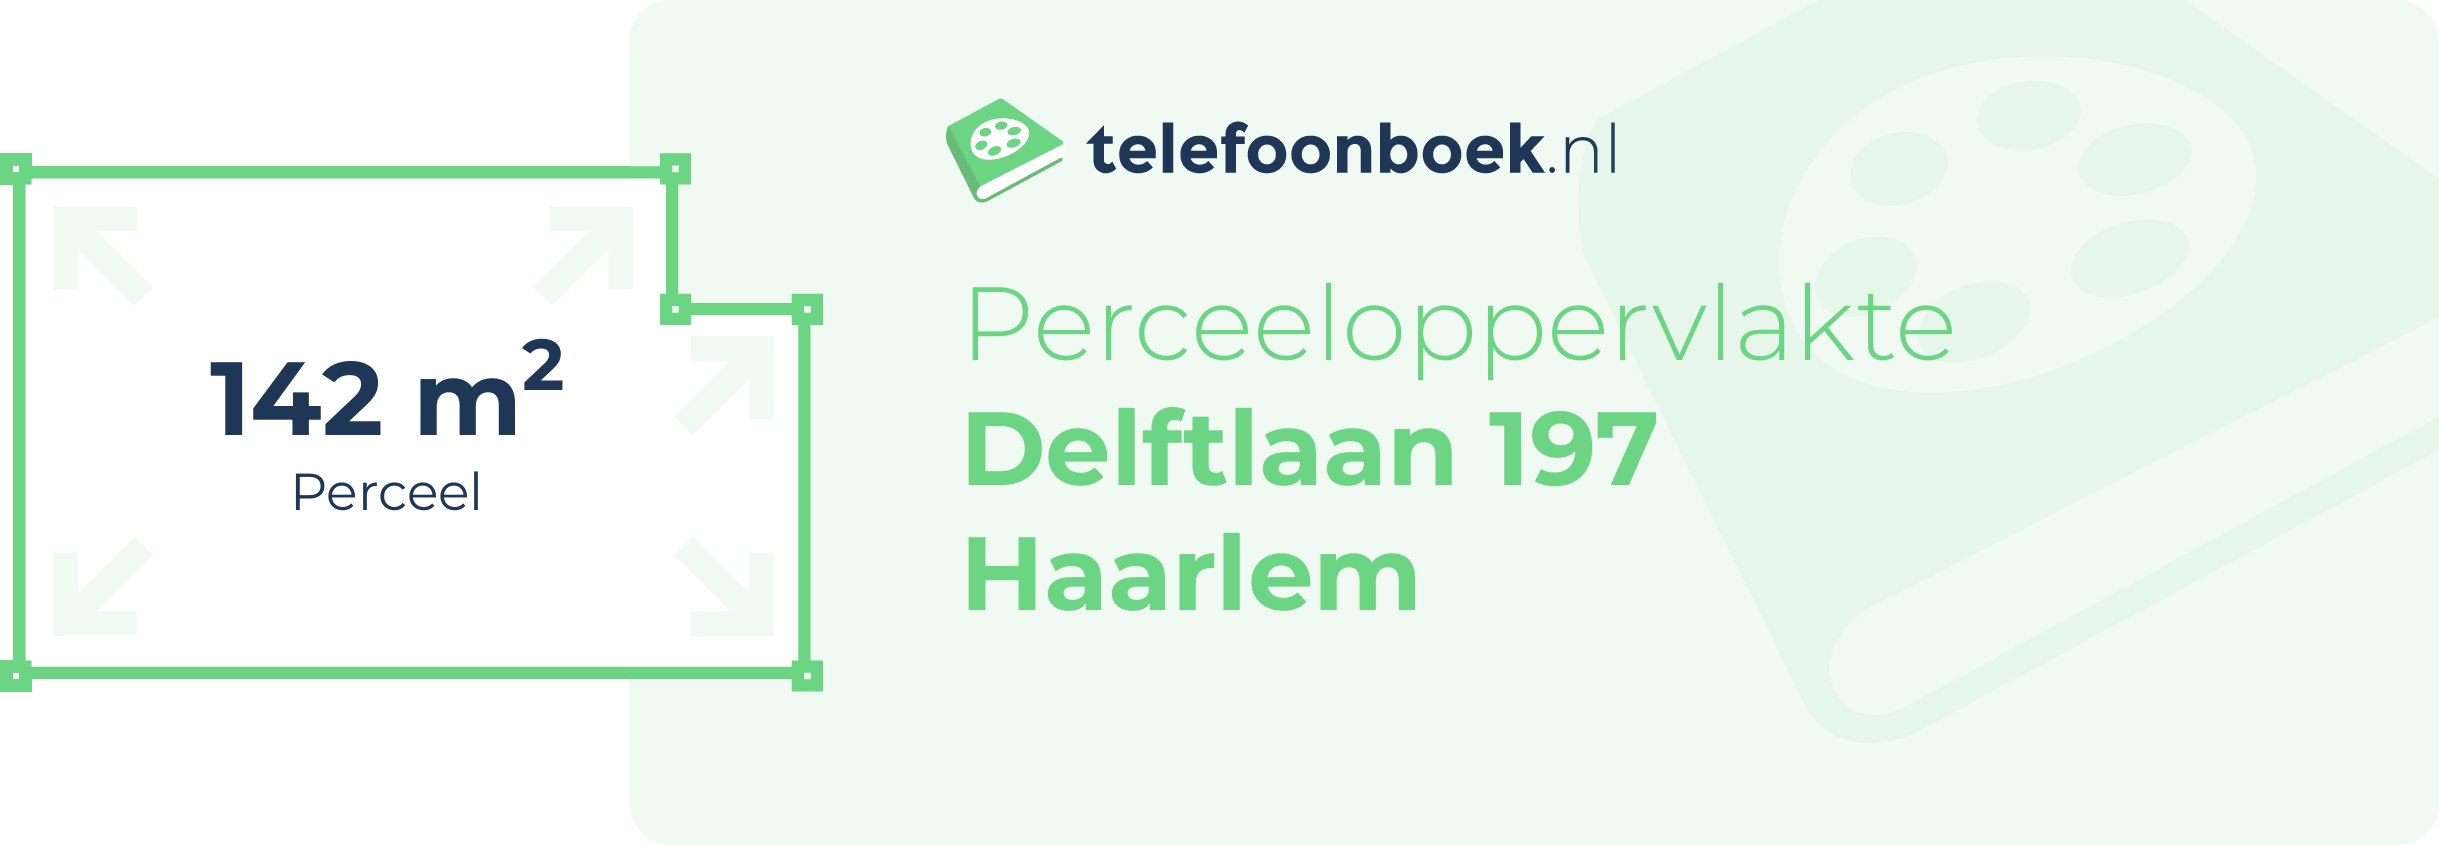 Perceeloppervlakte Delftlaan 197 Haarlem